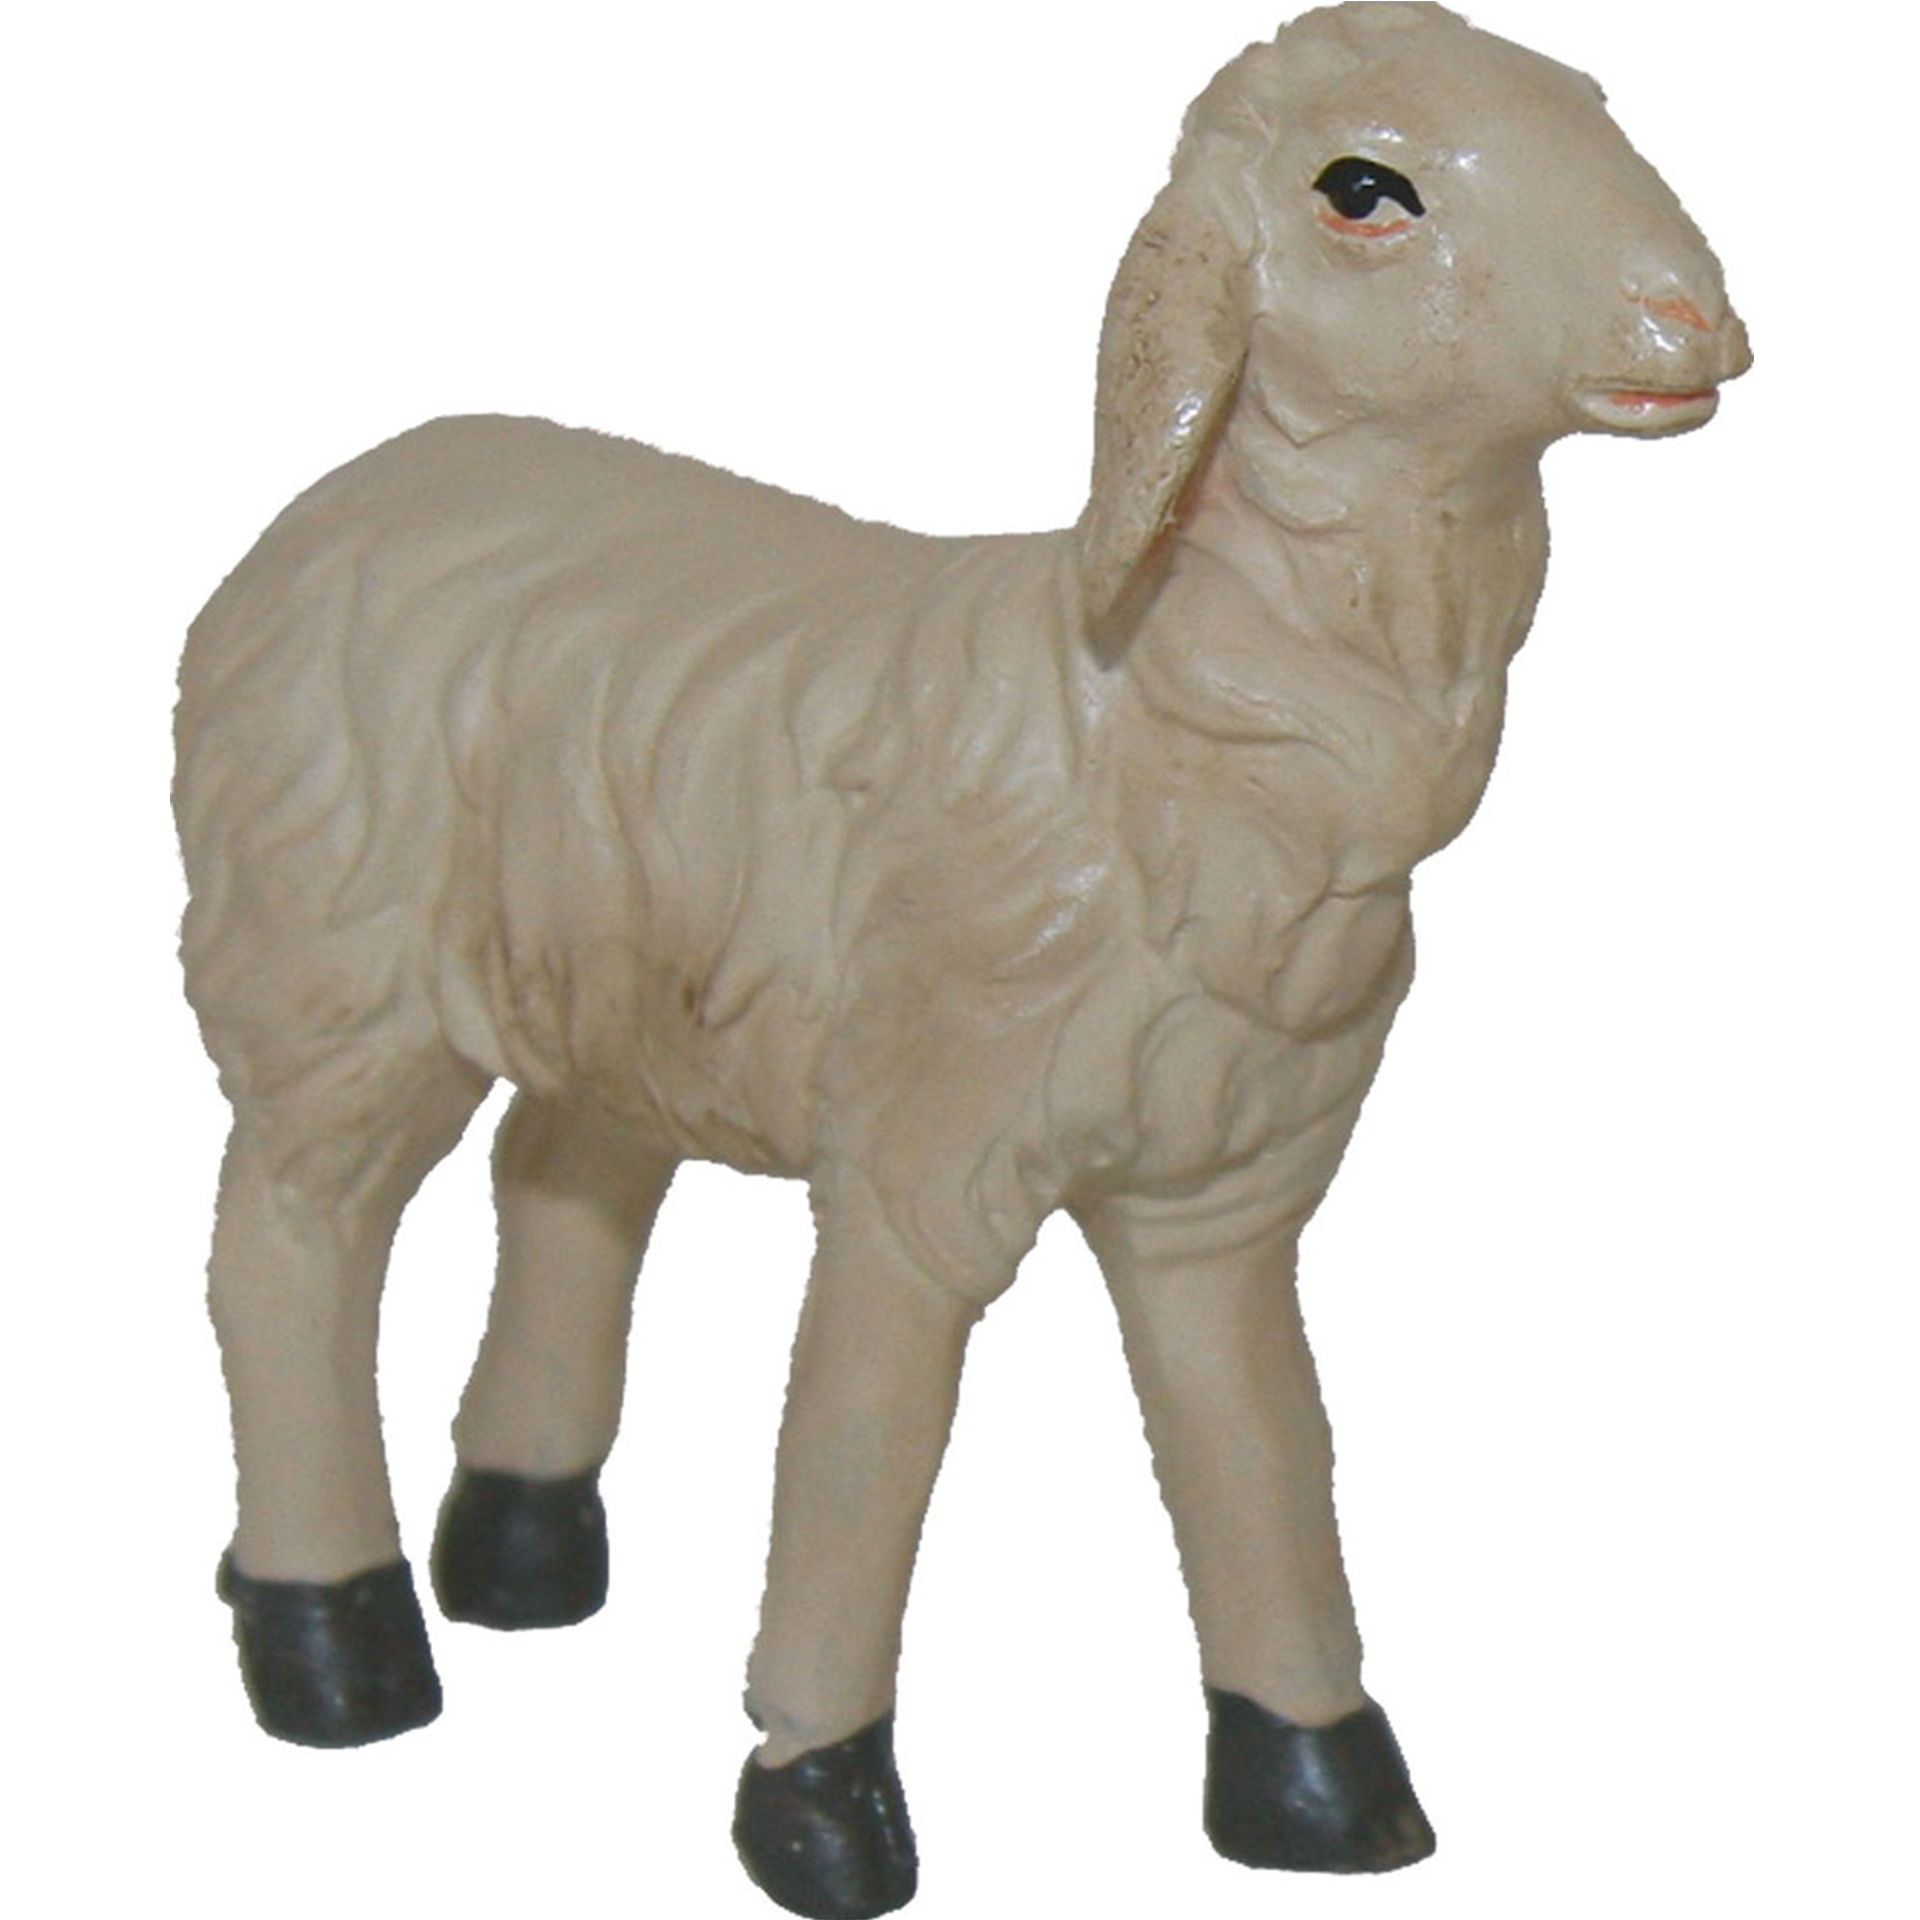 Schaf gerade schauend Krippenfigur Tierfigur